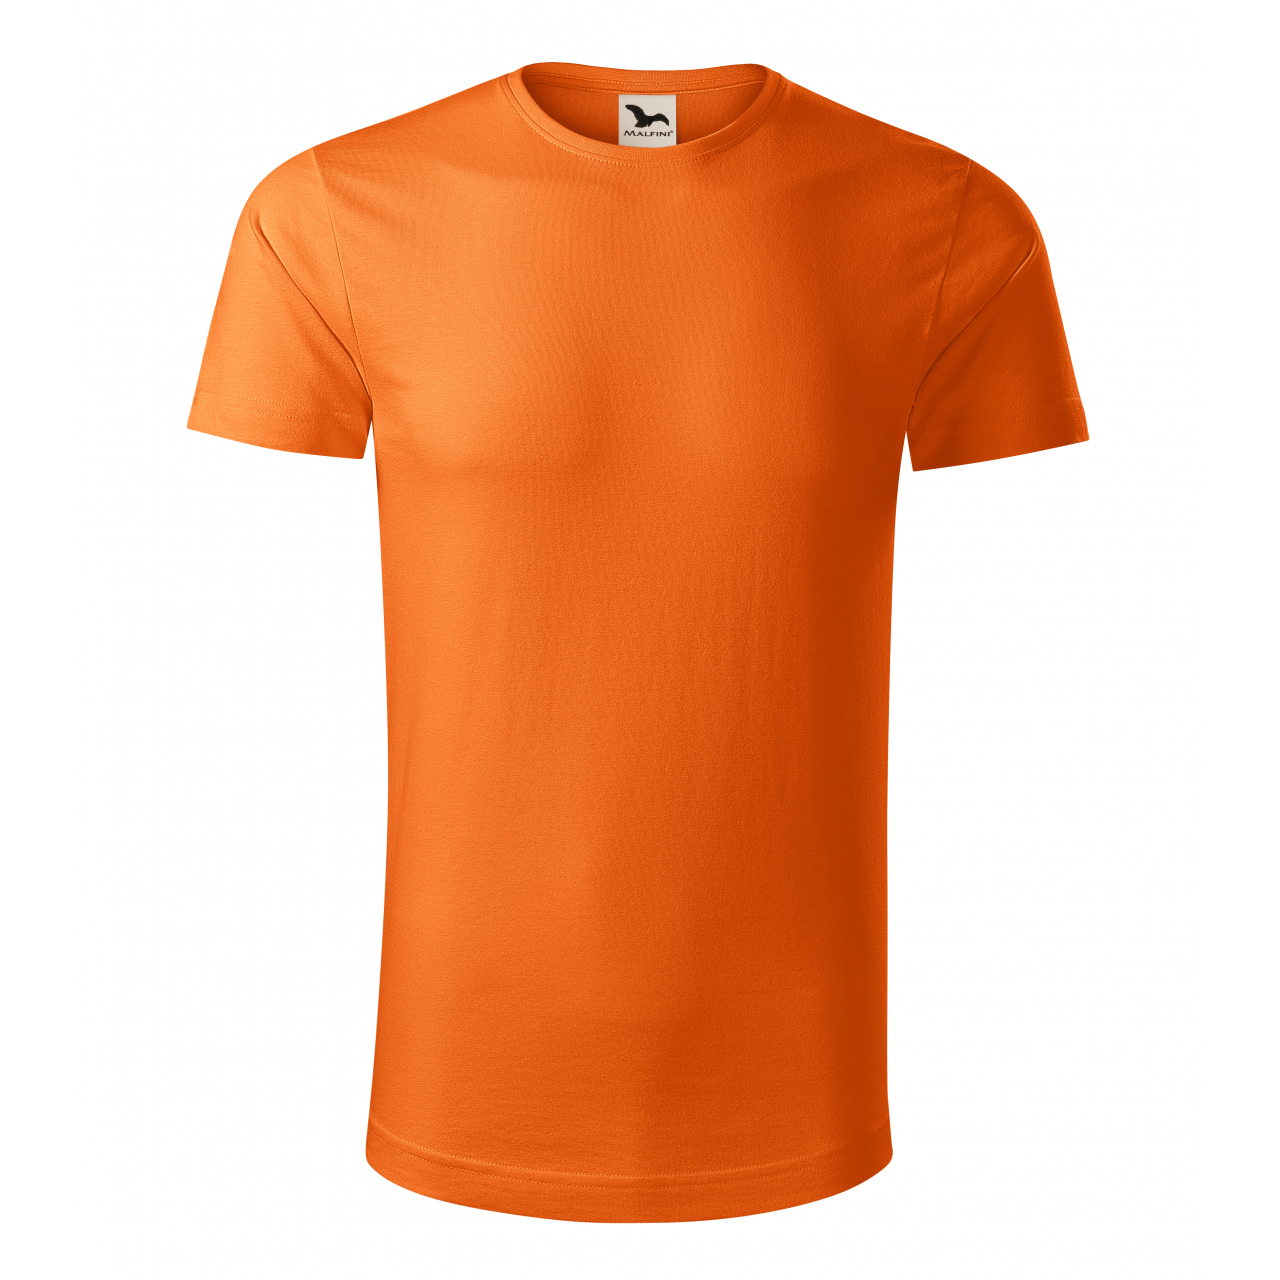 Tričko pánské Malfini Origin - oranžové, XL